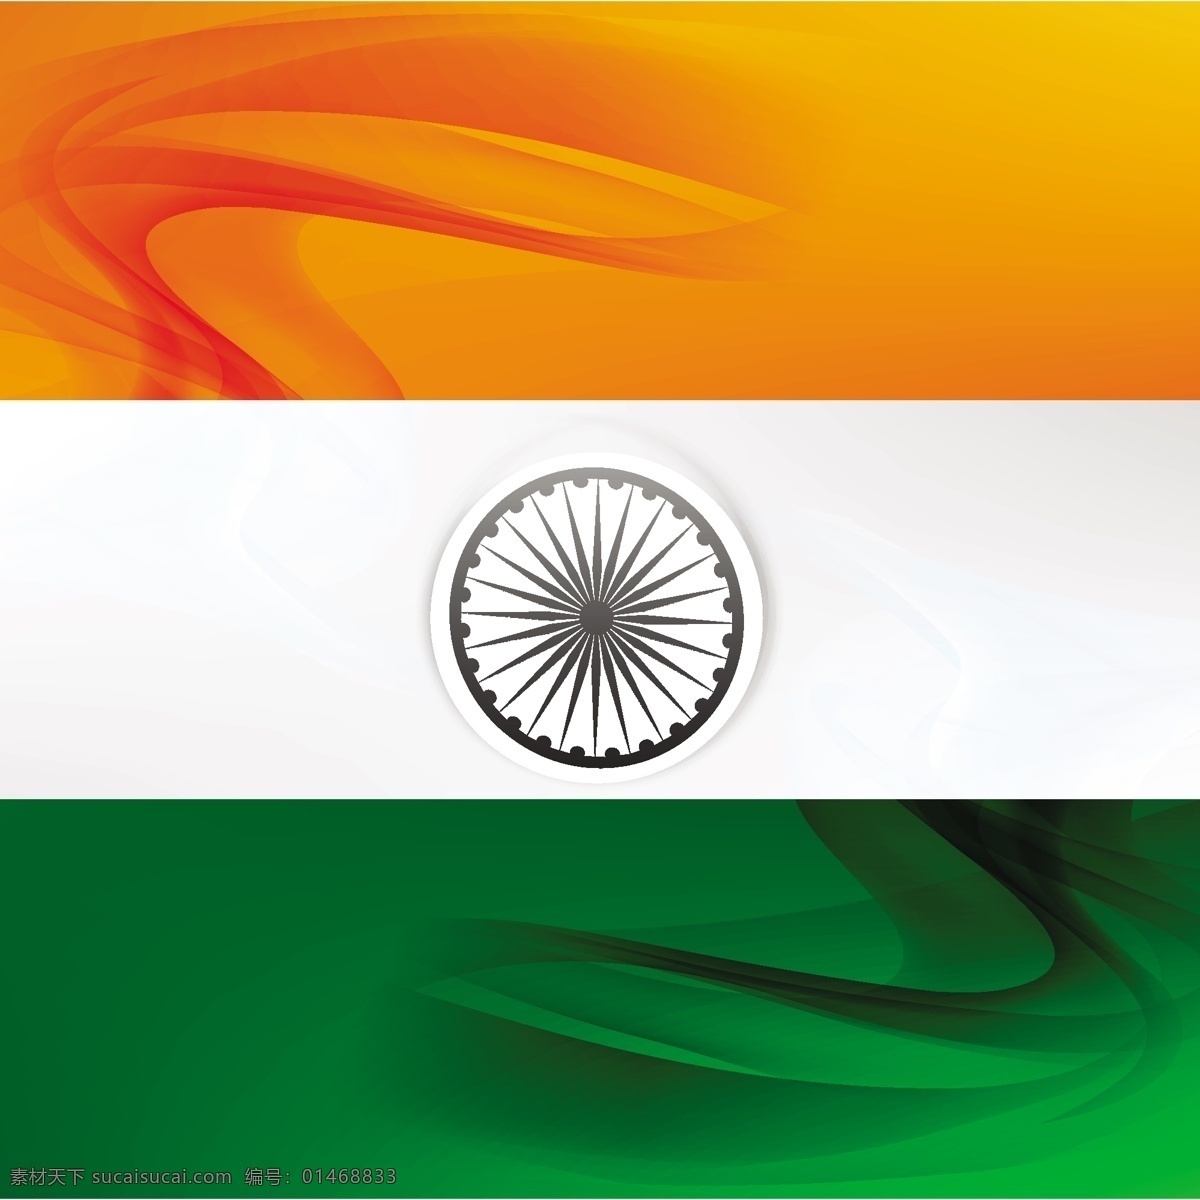 印度国旗背景 模式的波浪 抽象 波浪 印度 节日 假日 车轮 国旗 波浪状